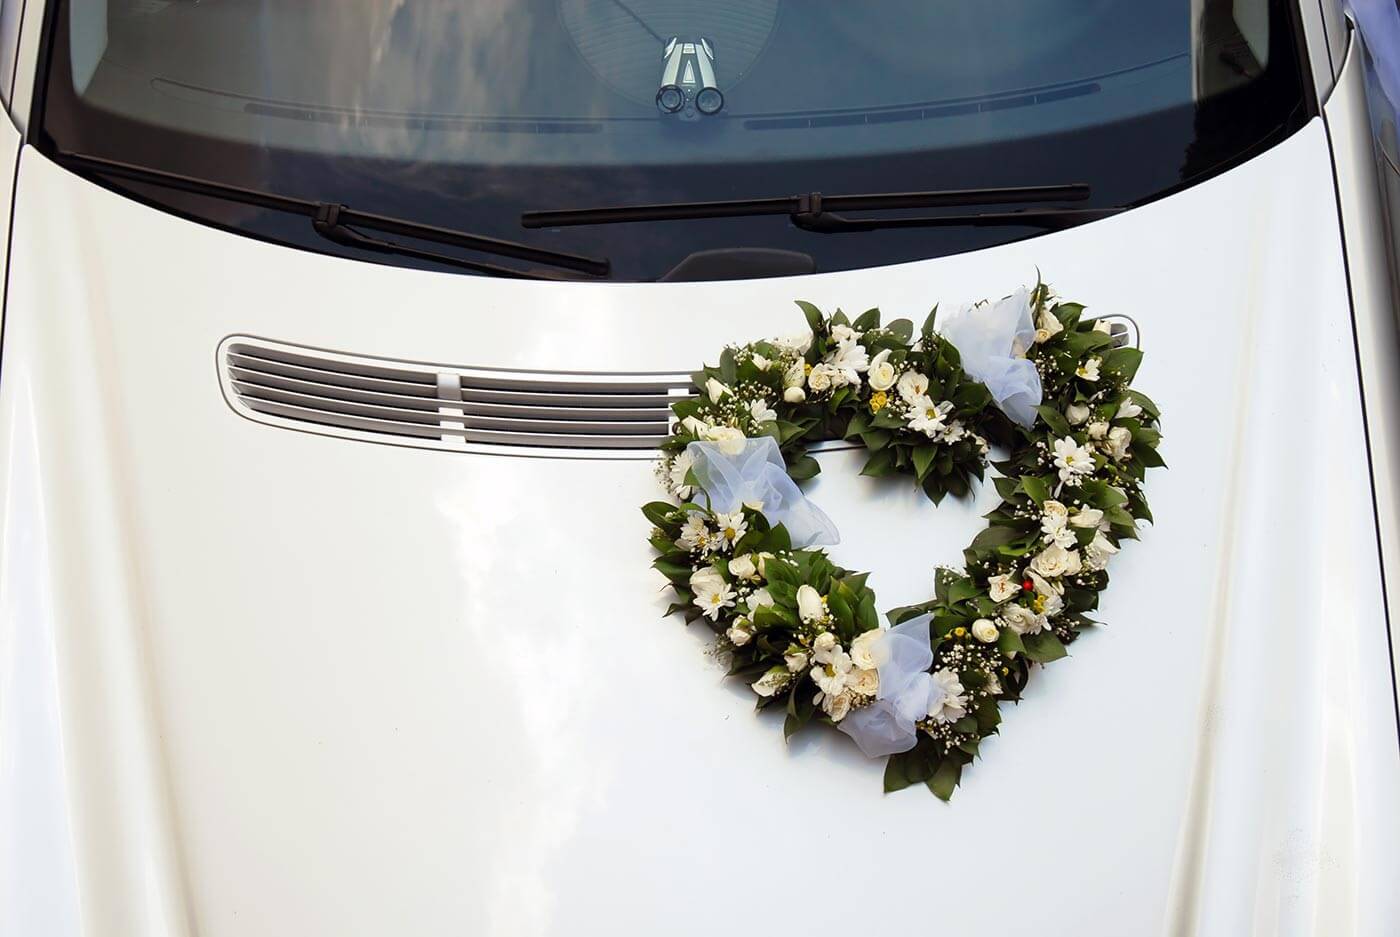 Autoschmuck zur Hochzeit: Bilder